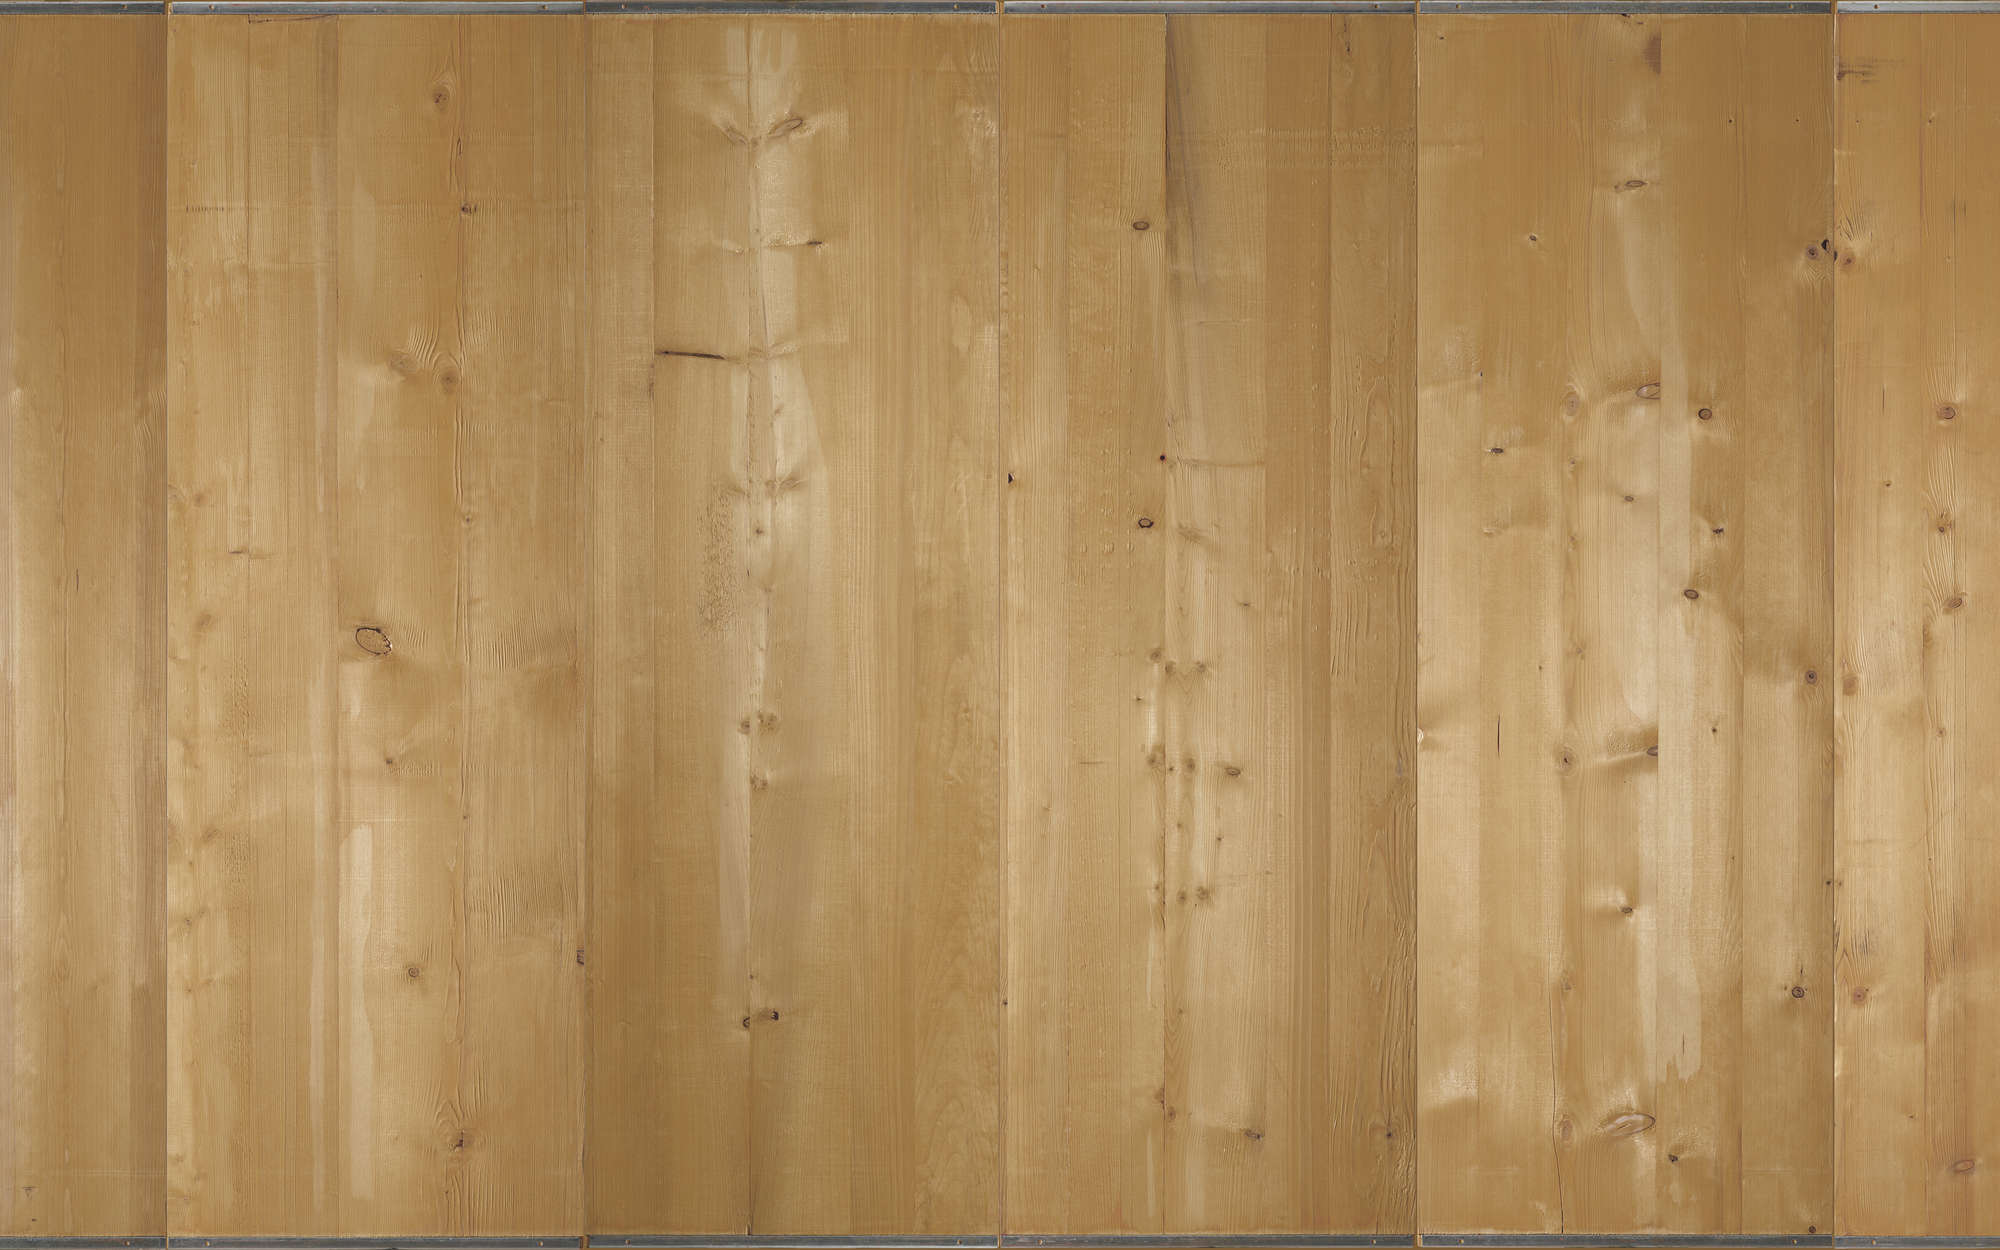             Fotomurali in legno chiaro - Vello liscio opaco
        